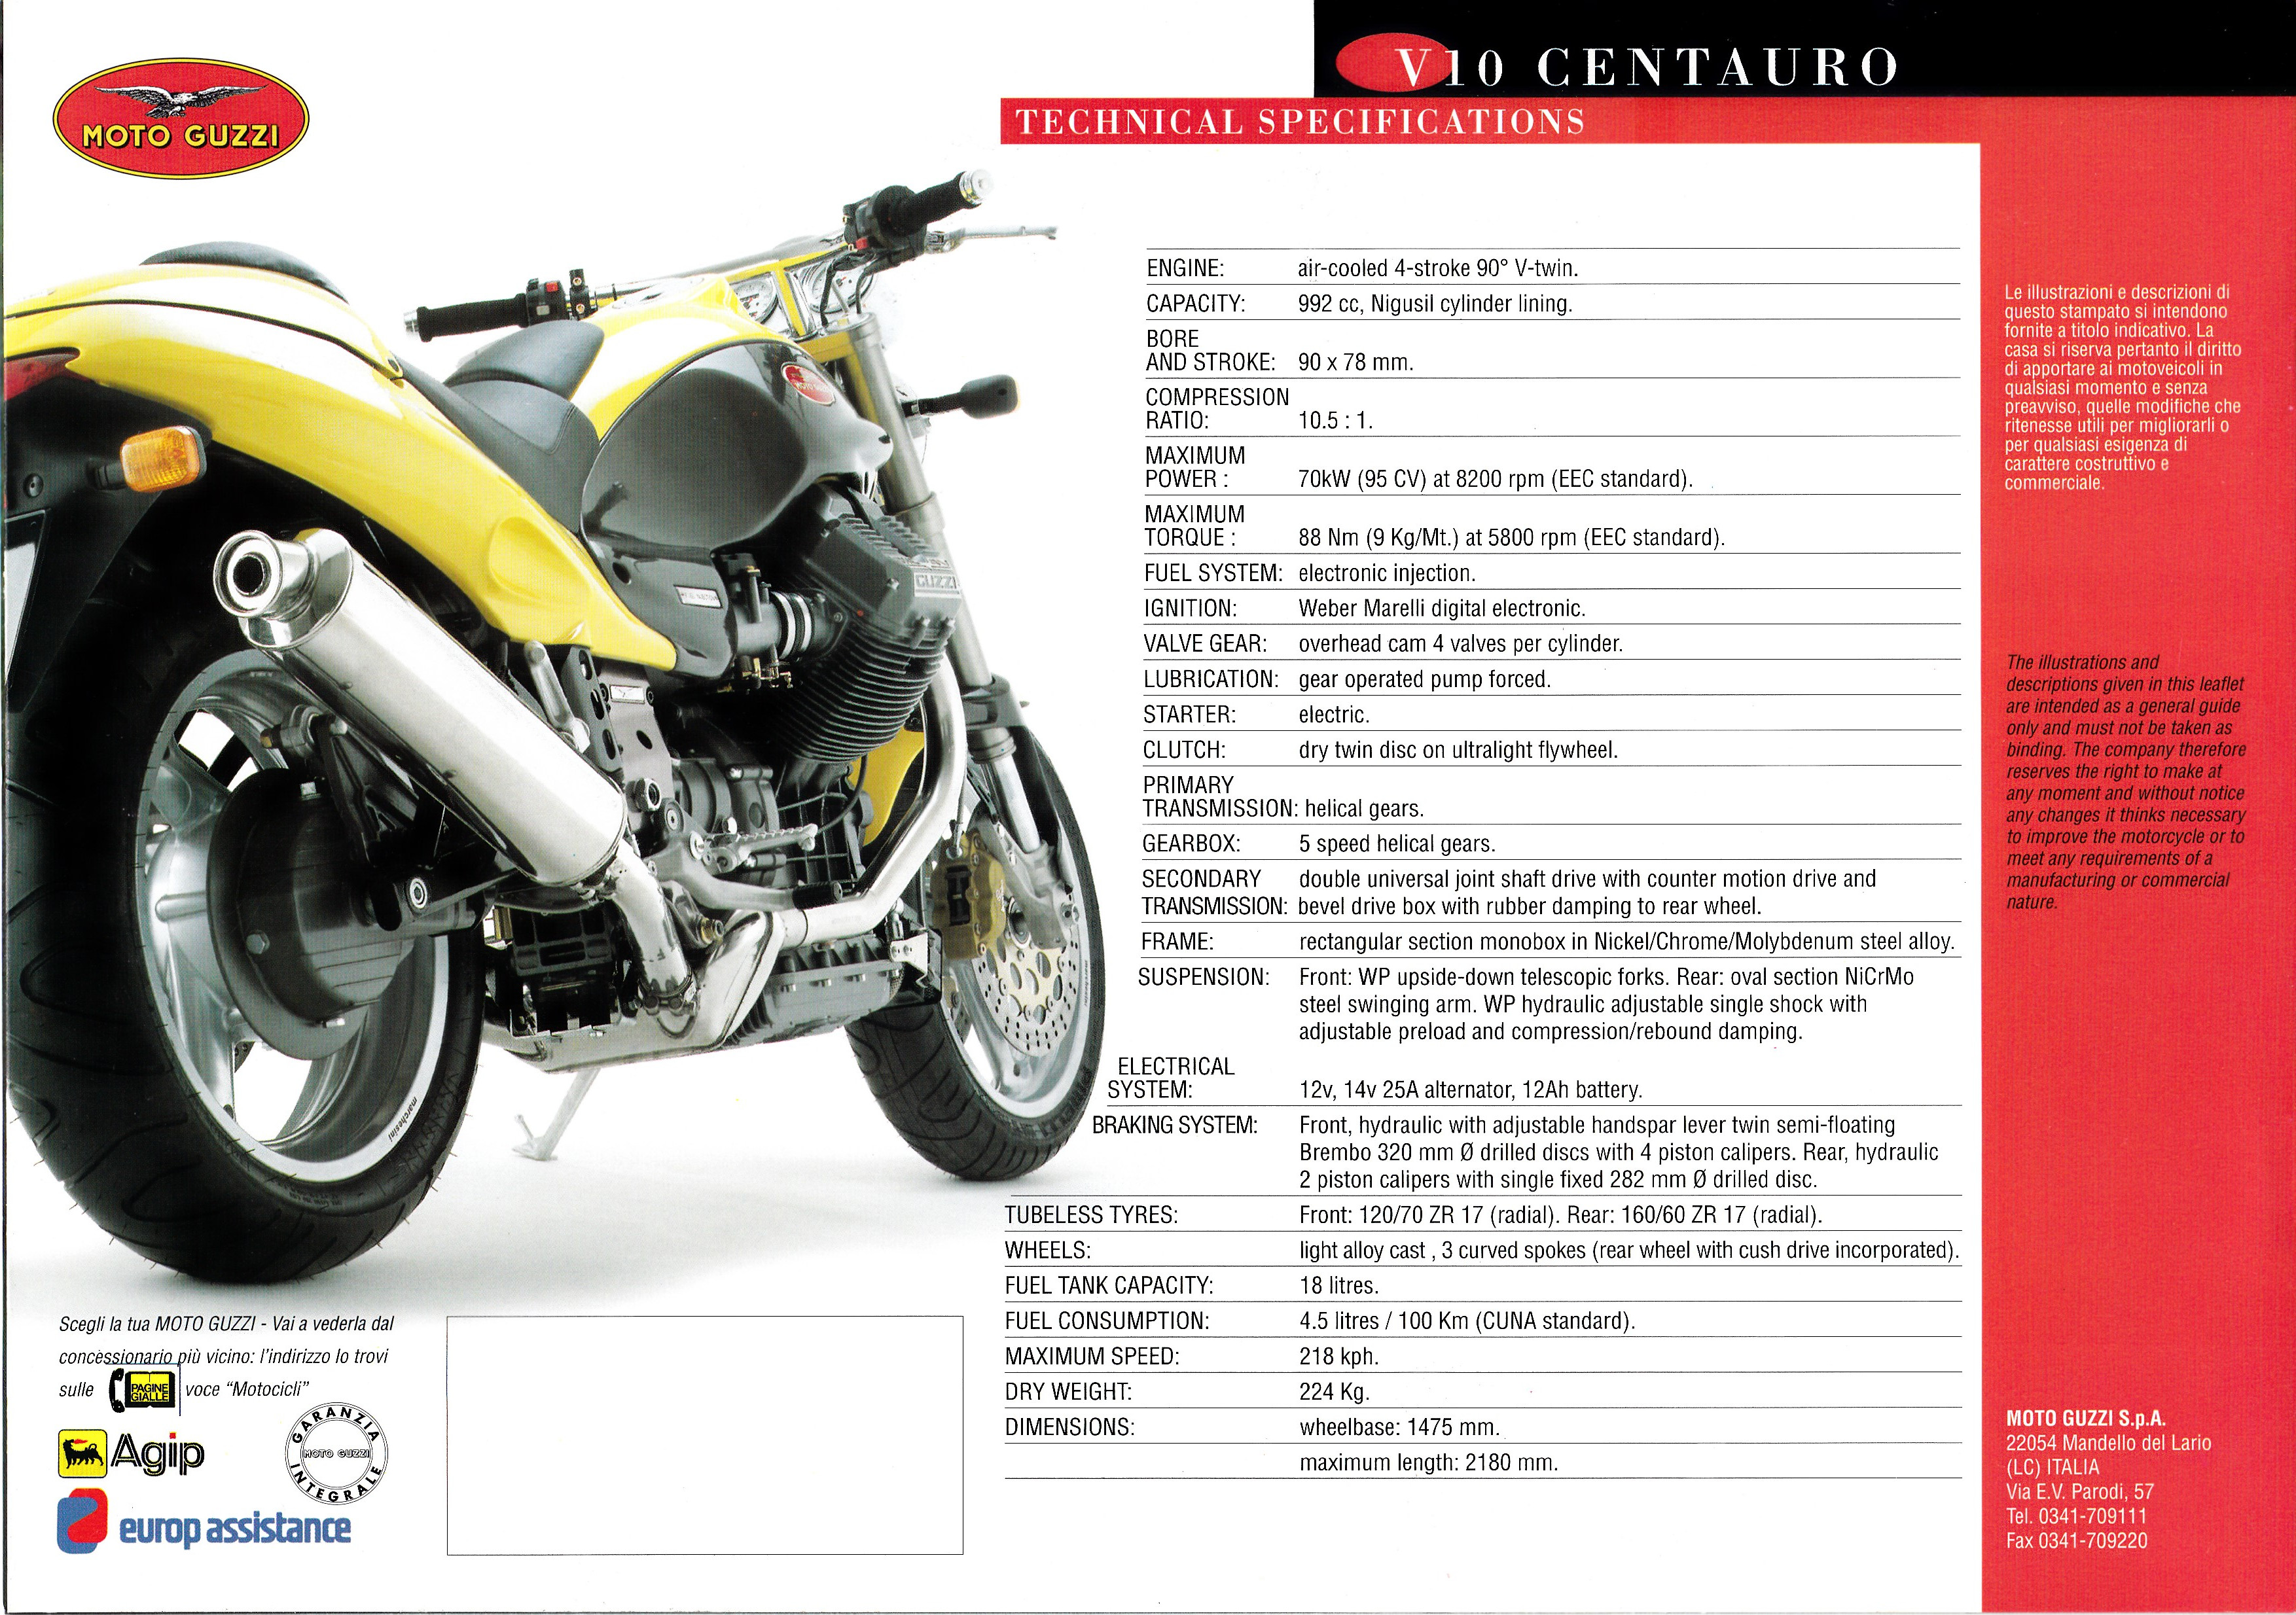 Brochure - Moto Guzzi V10 Centauro